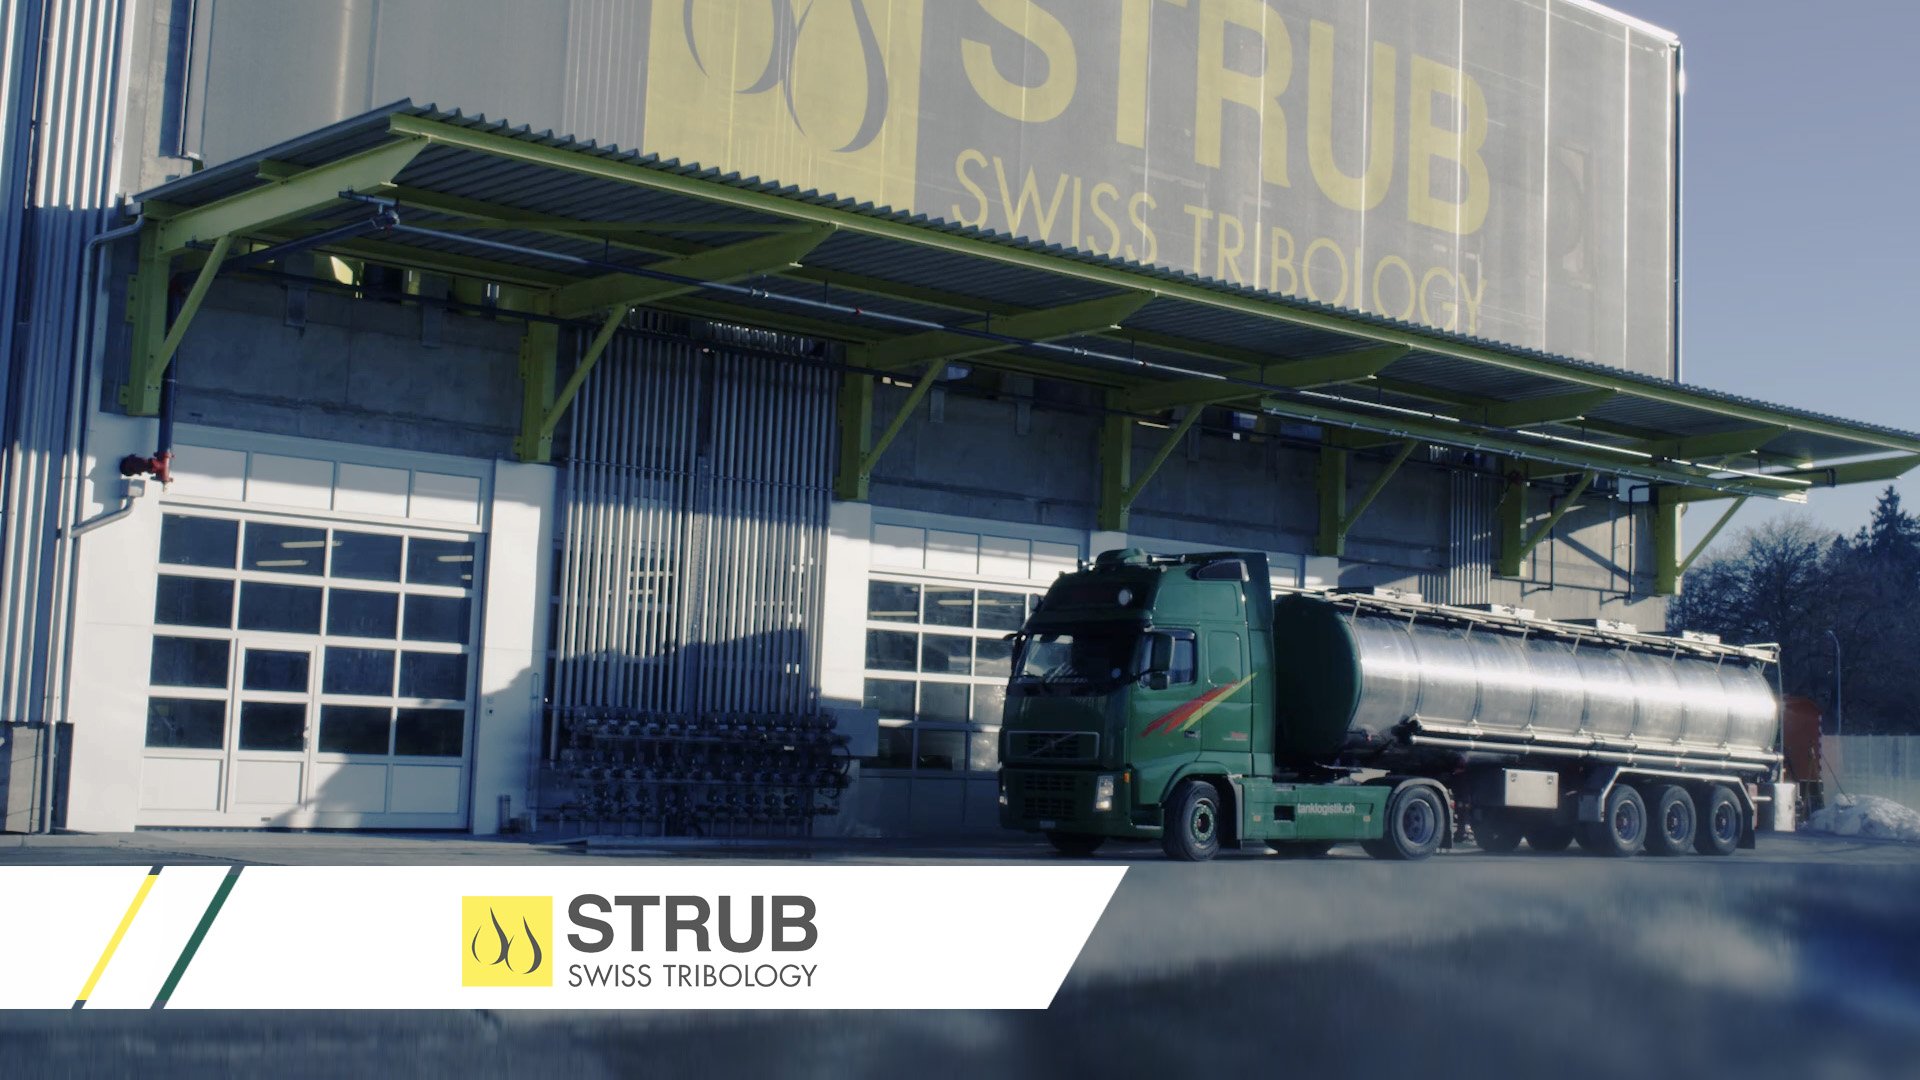 Strub Swiss Tribology (Industrie)